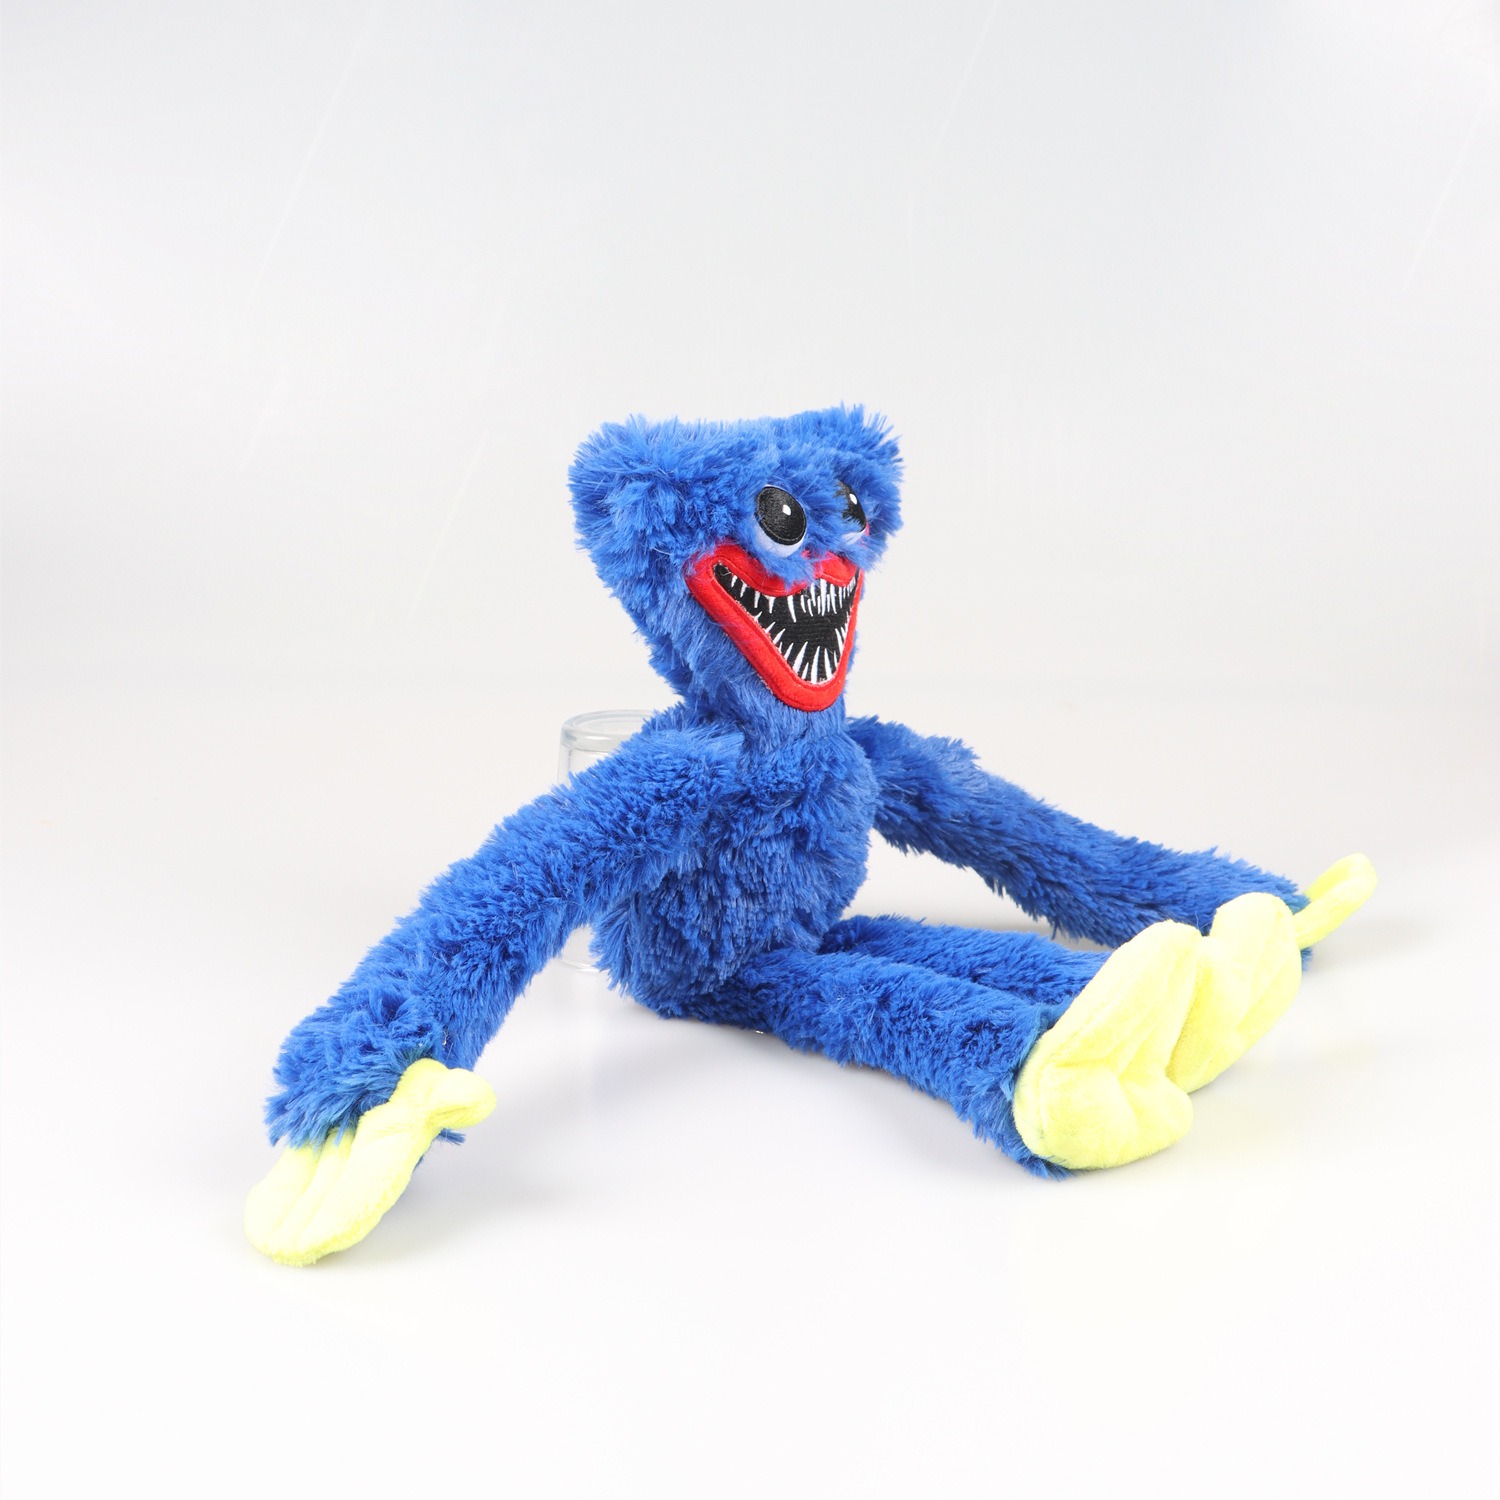 Gấu bông Huggy Wuggy siêu dễ thương – Quà tặng thú nhồi bông nhân vật hoạt hình Poppy Playtime – Nhiều size – Gối ôm cho bé ngủ ngon